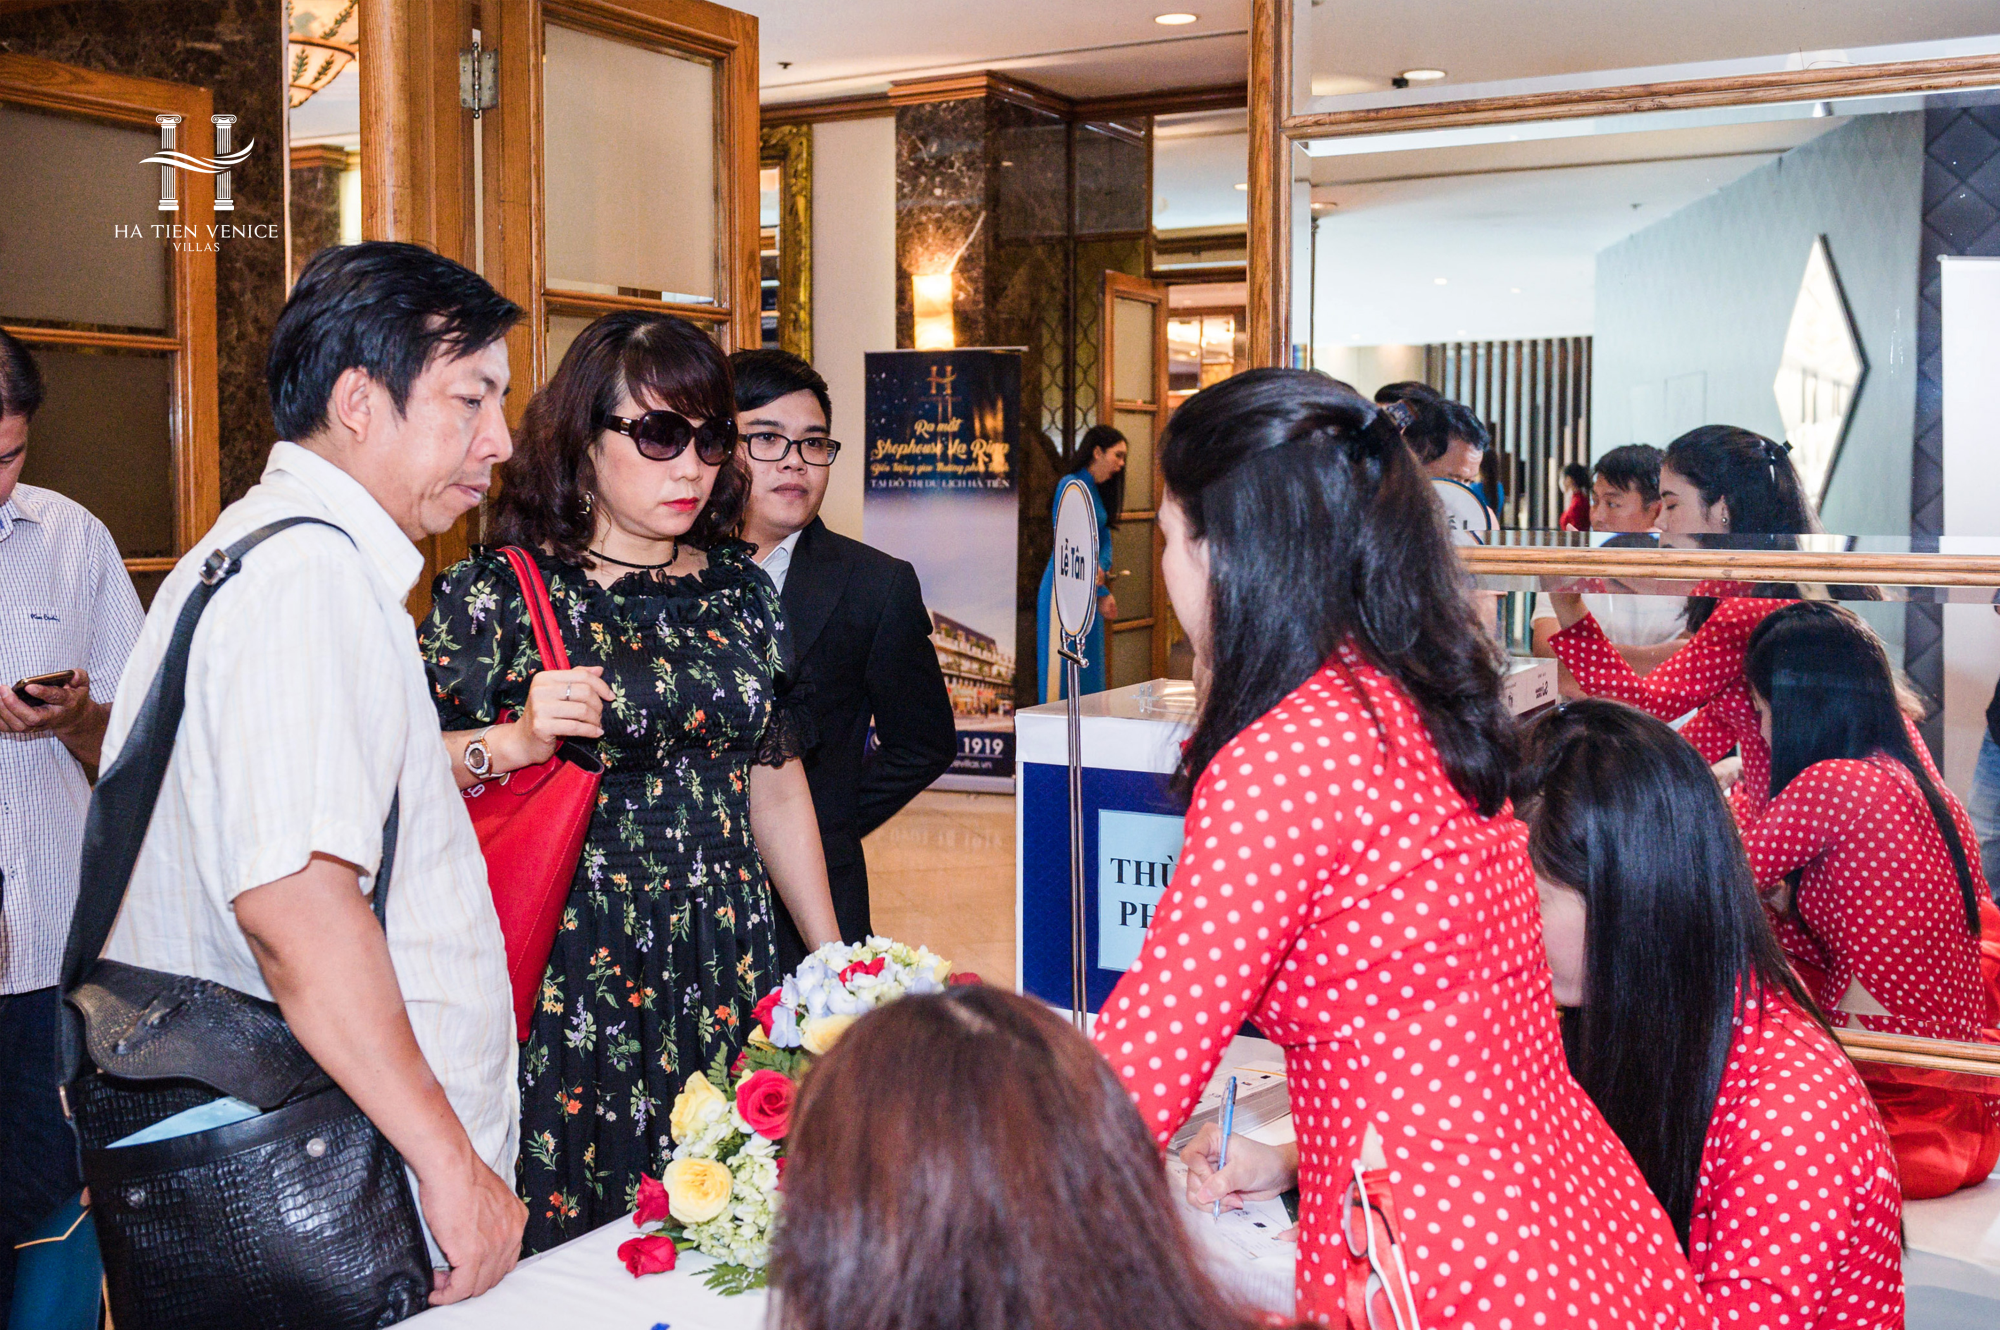 Lễ mở bán dự án Ha Tien Venice Villas 18/05/2019